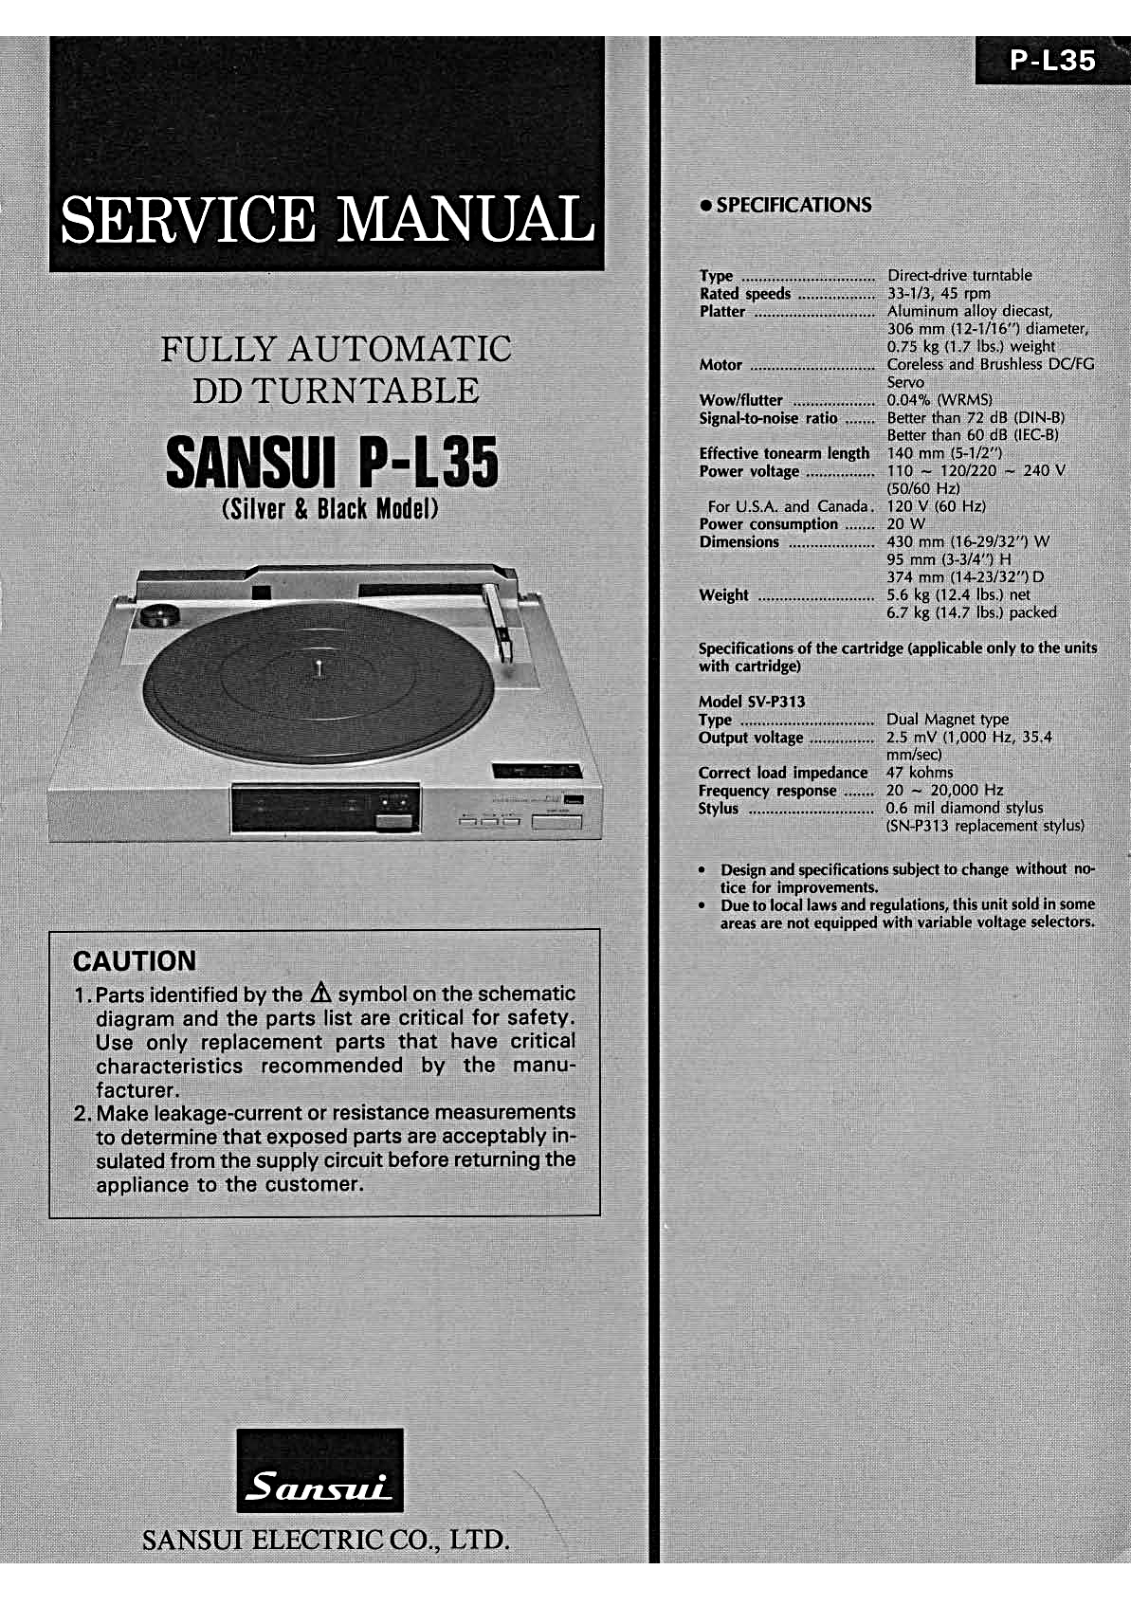 Sansui P-L35 Service Manual